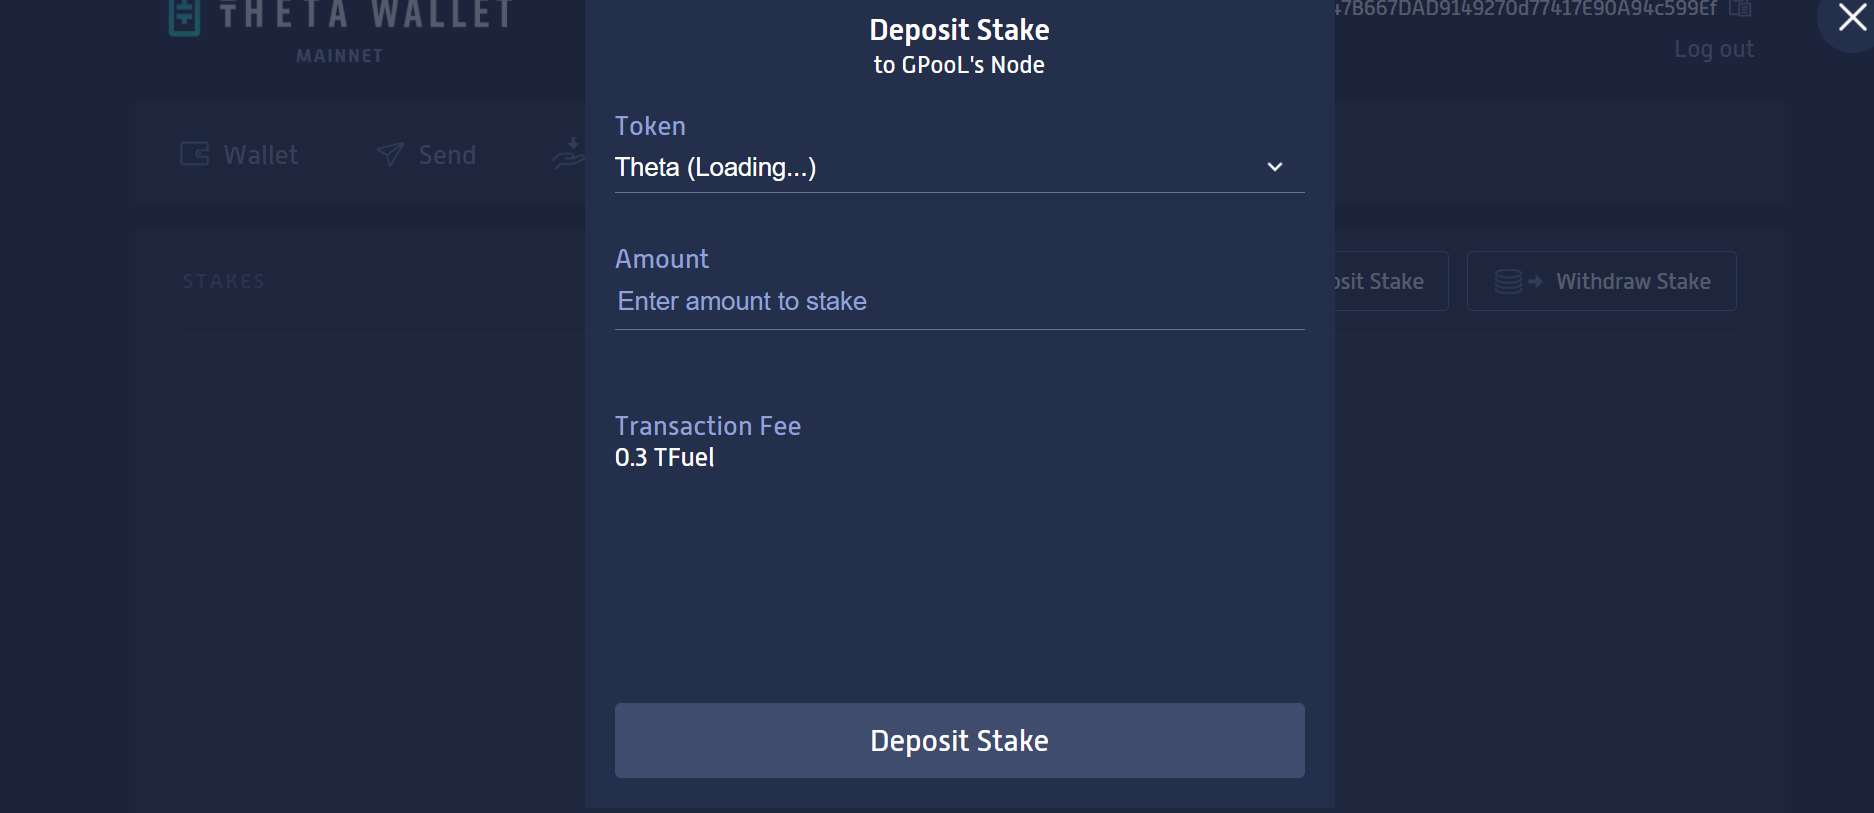 Deposit stake